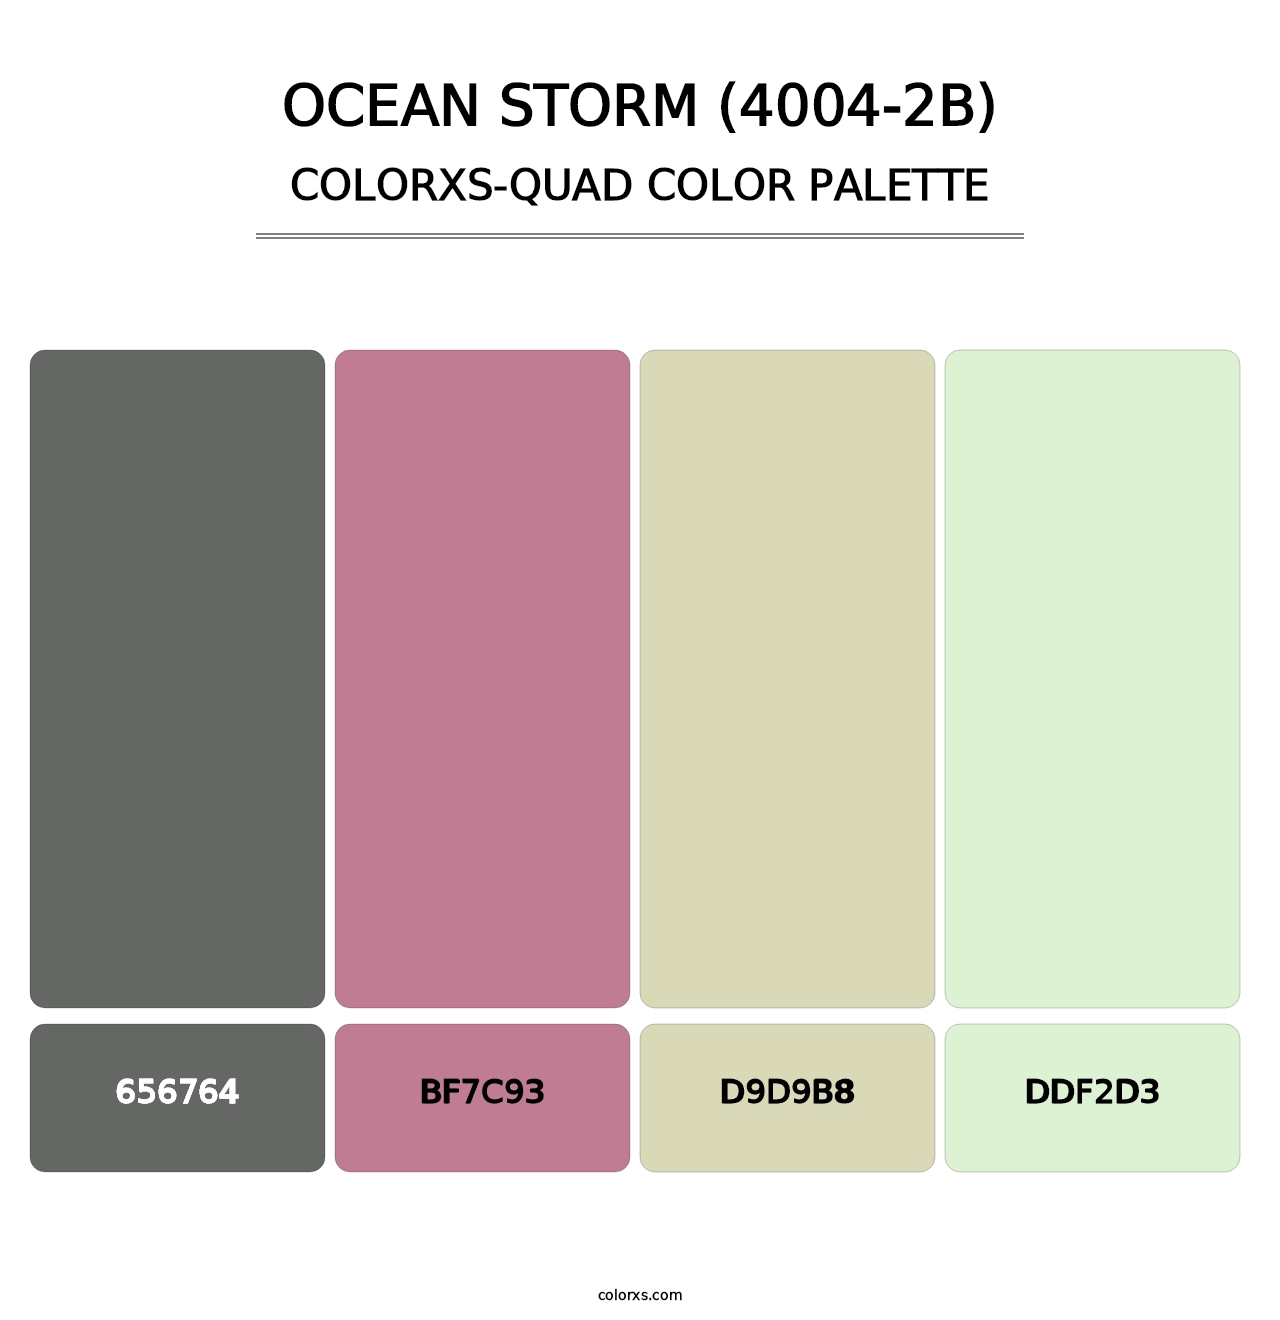 Ocean Storm (4004-2B) - Colorxs Quad Palette